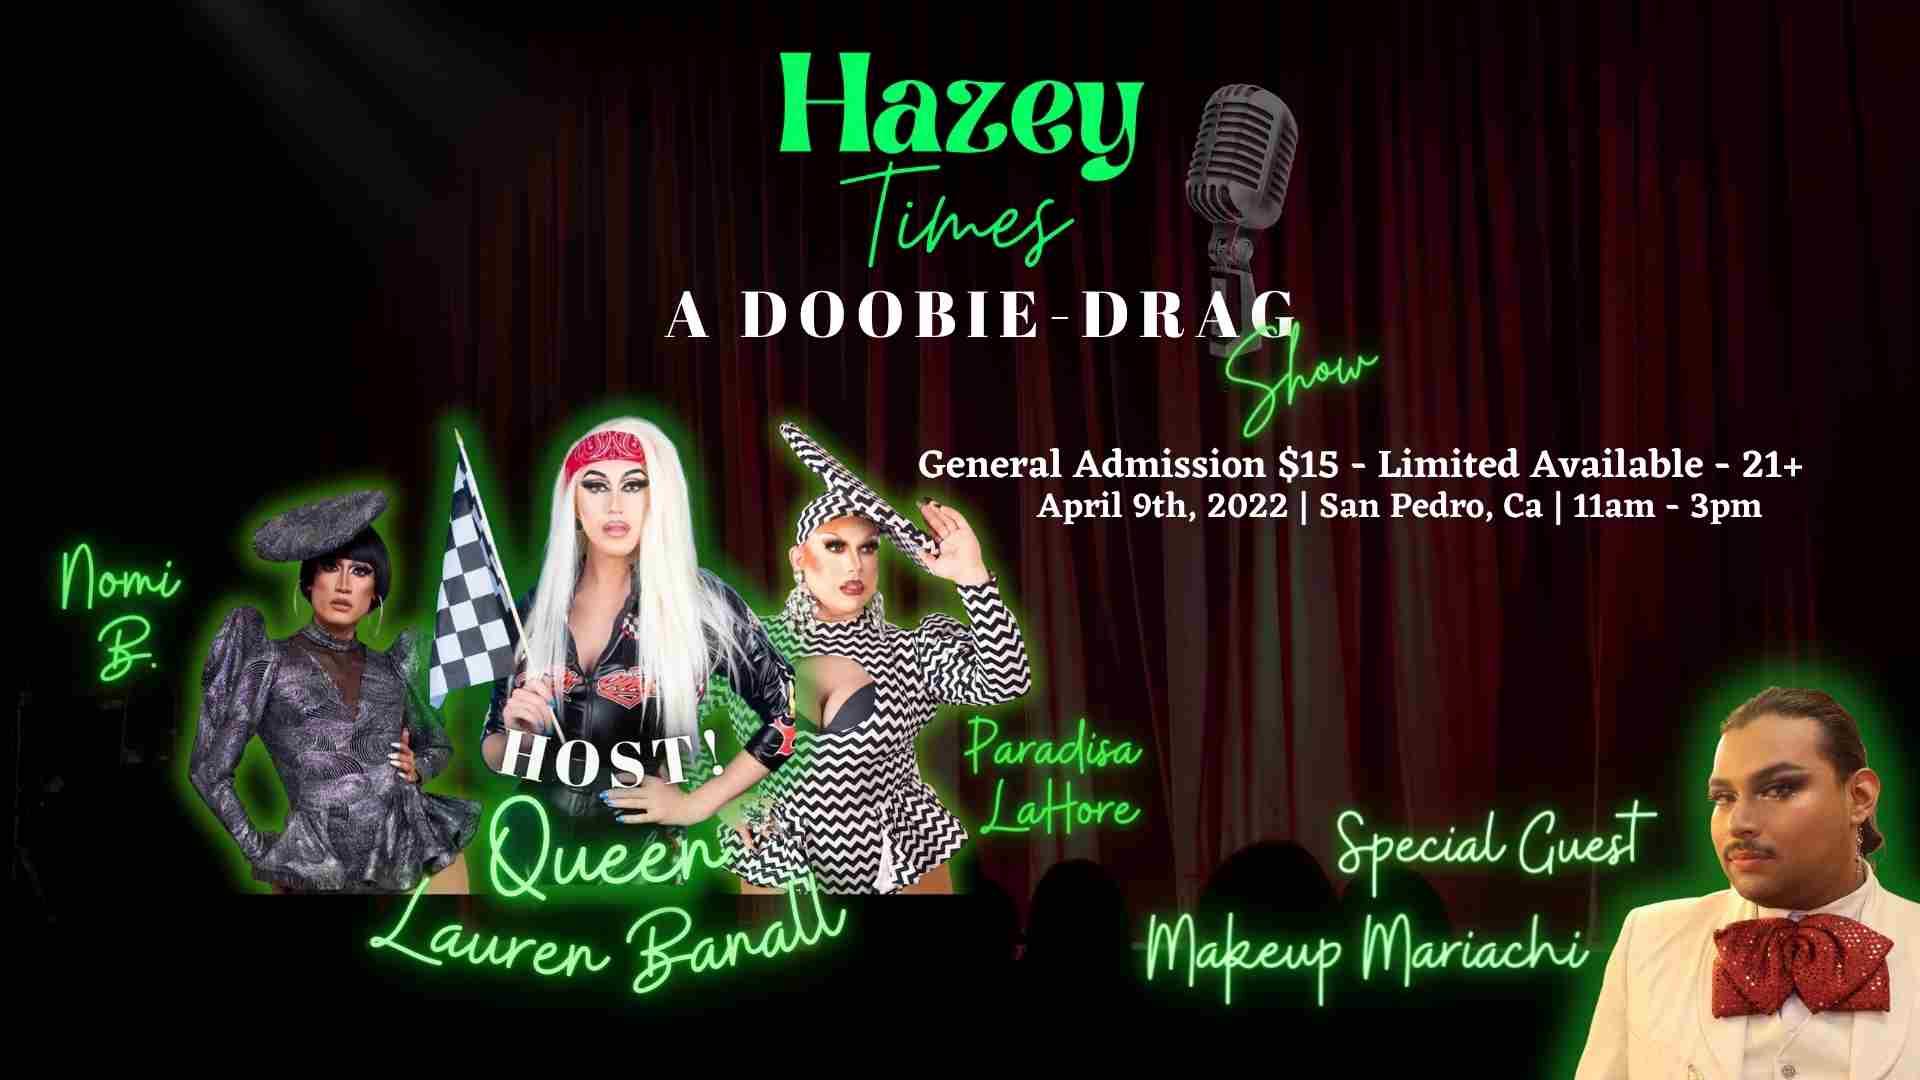 Hazey Times - A Doobie Drag Show